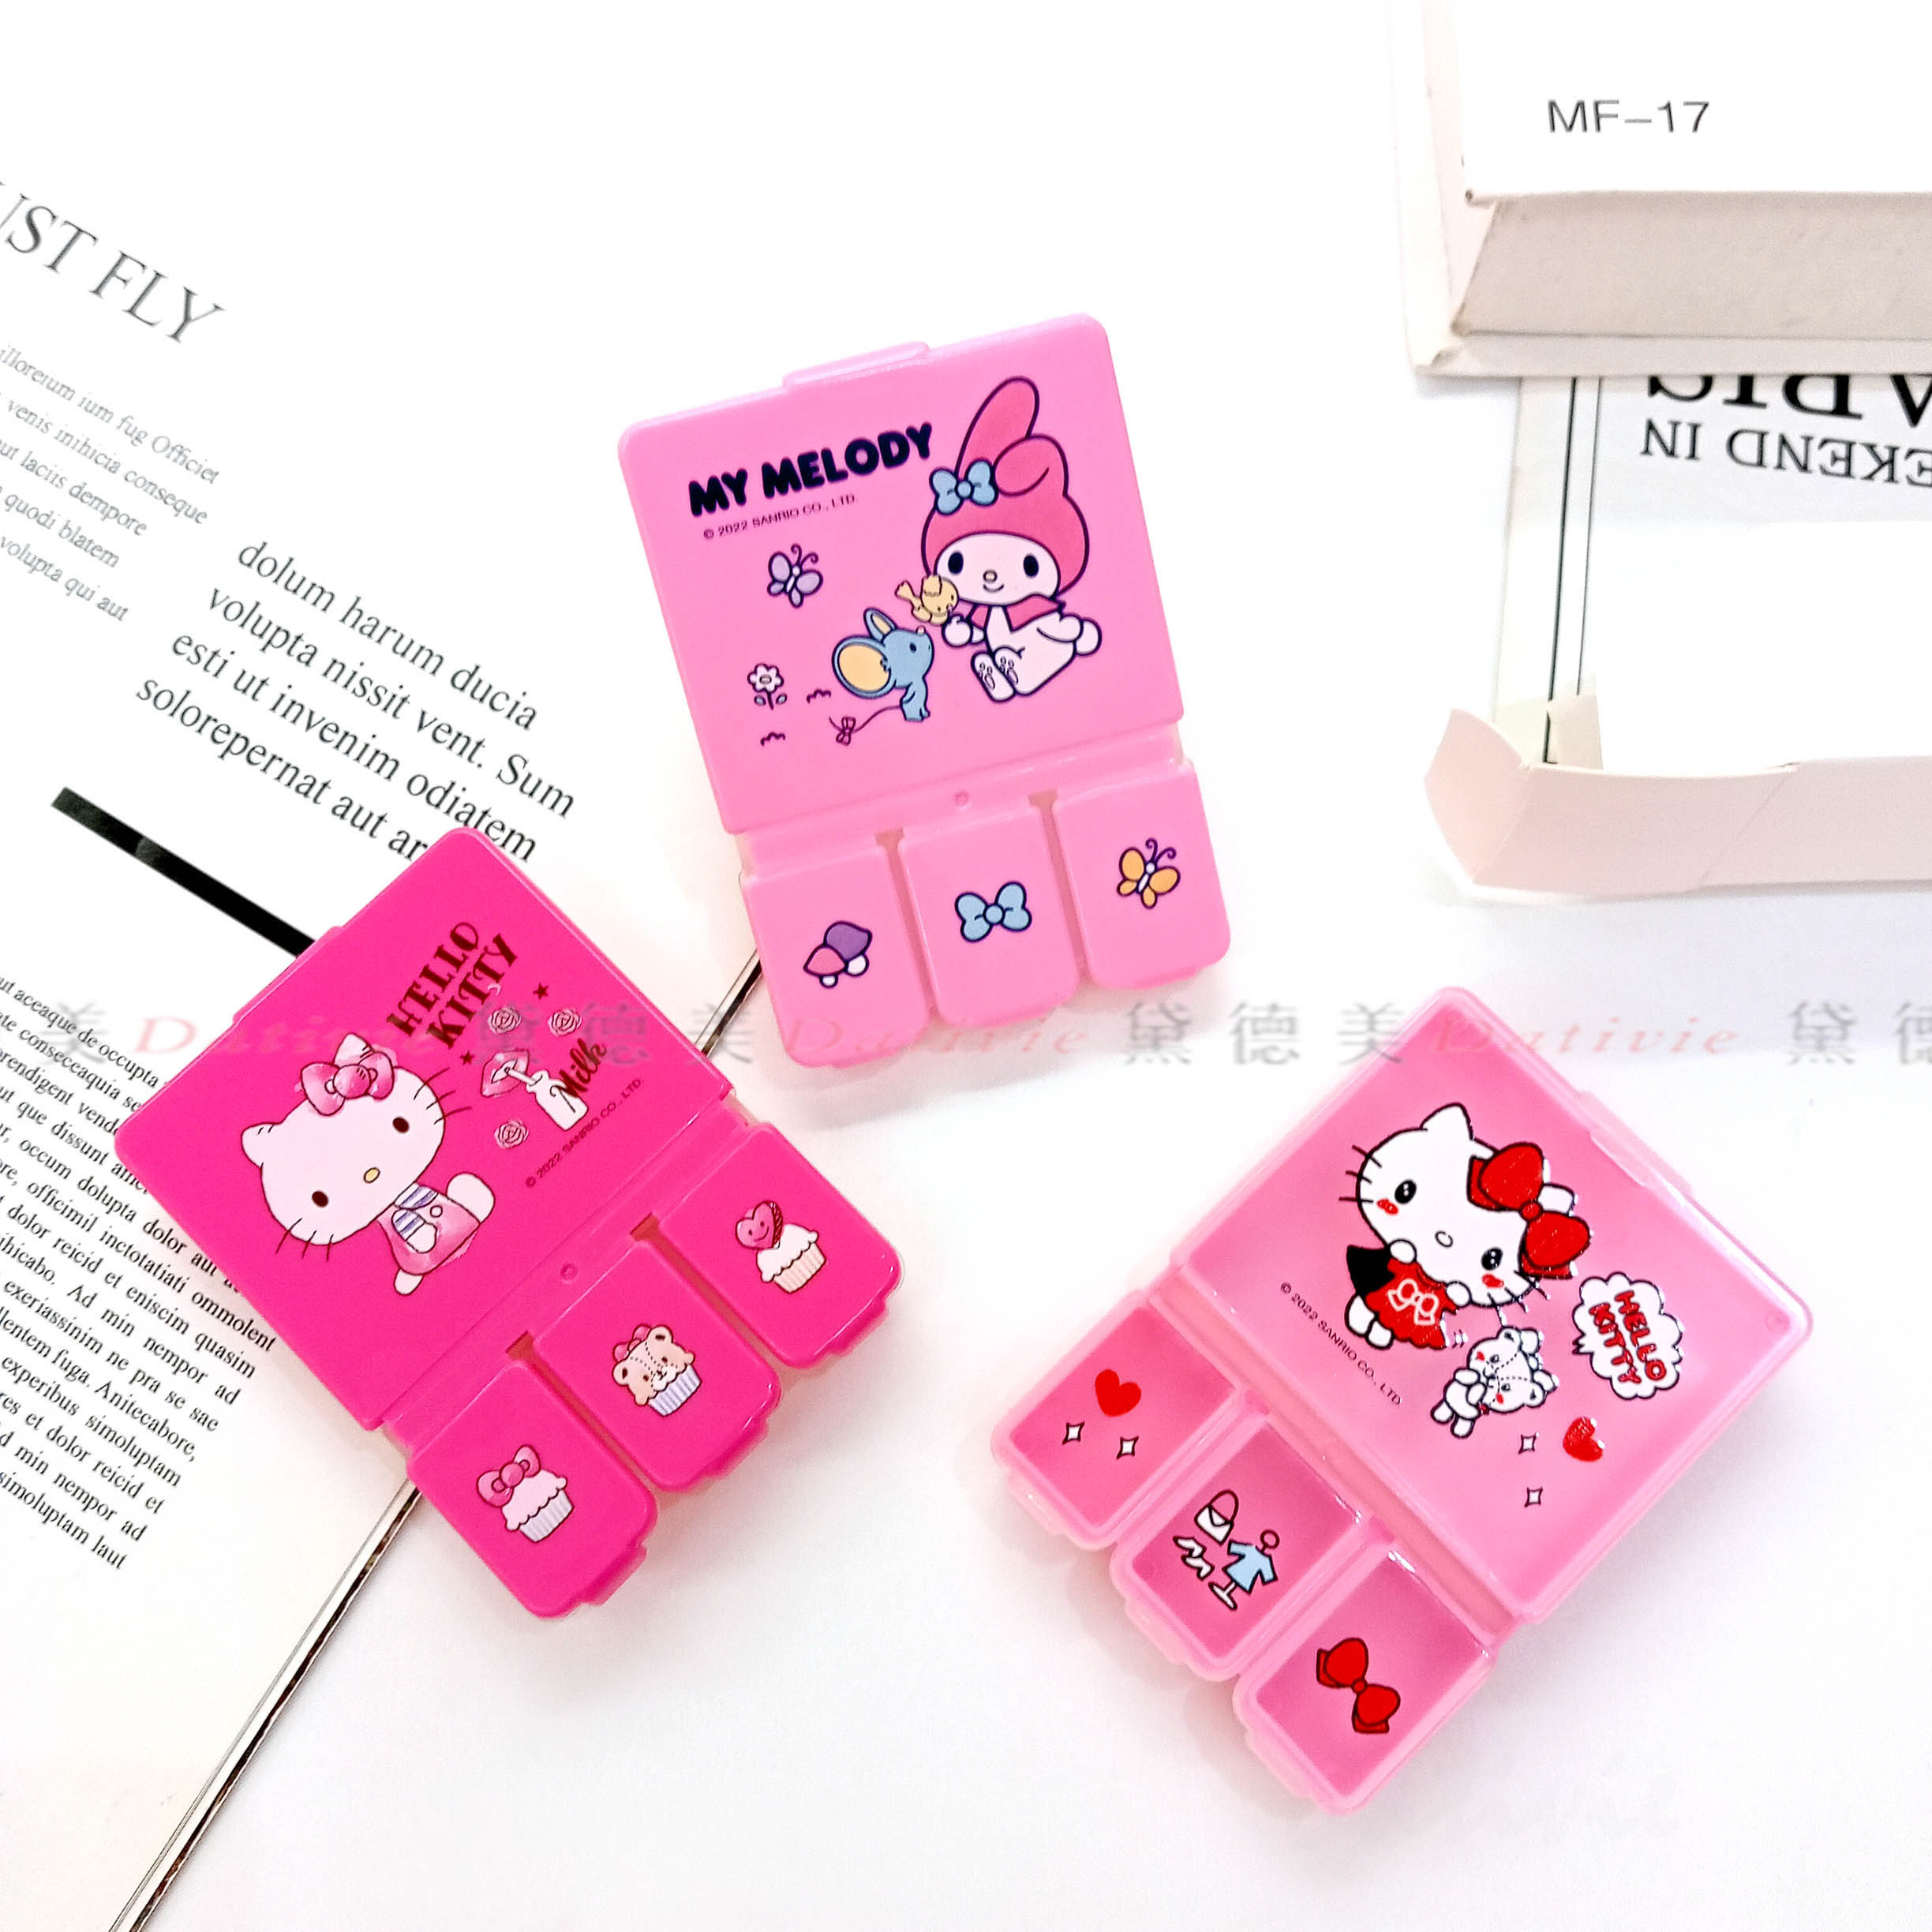 四格置物盒-凱蒂貓 美樂蒂 HELLO KITTY MELODY 三麗鷗 Sanrio 正版授權